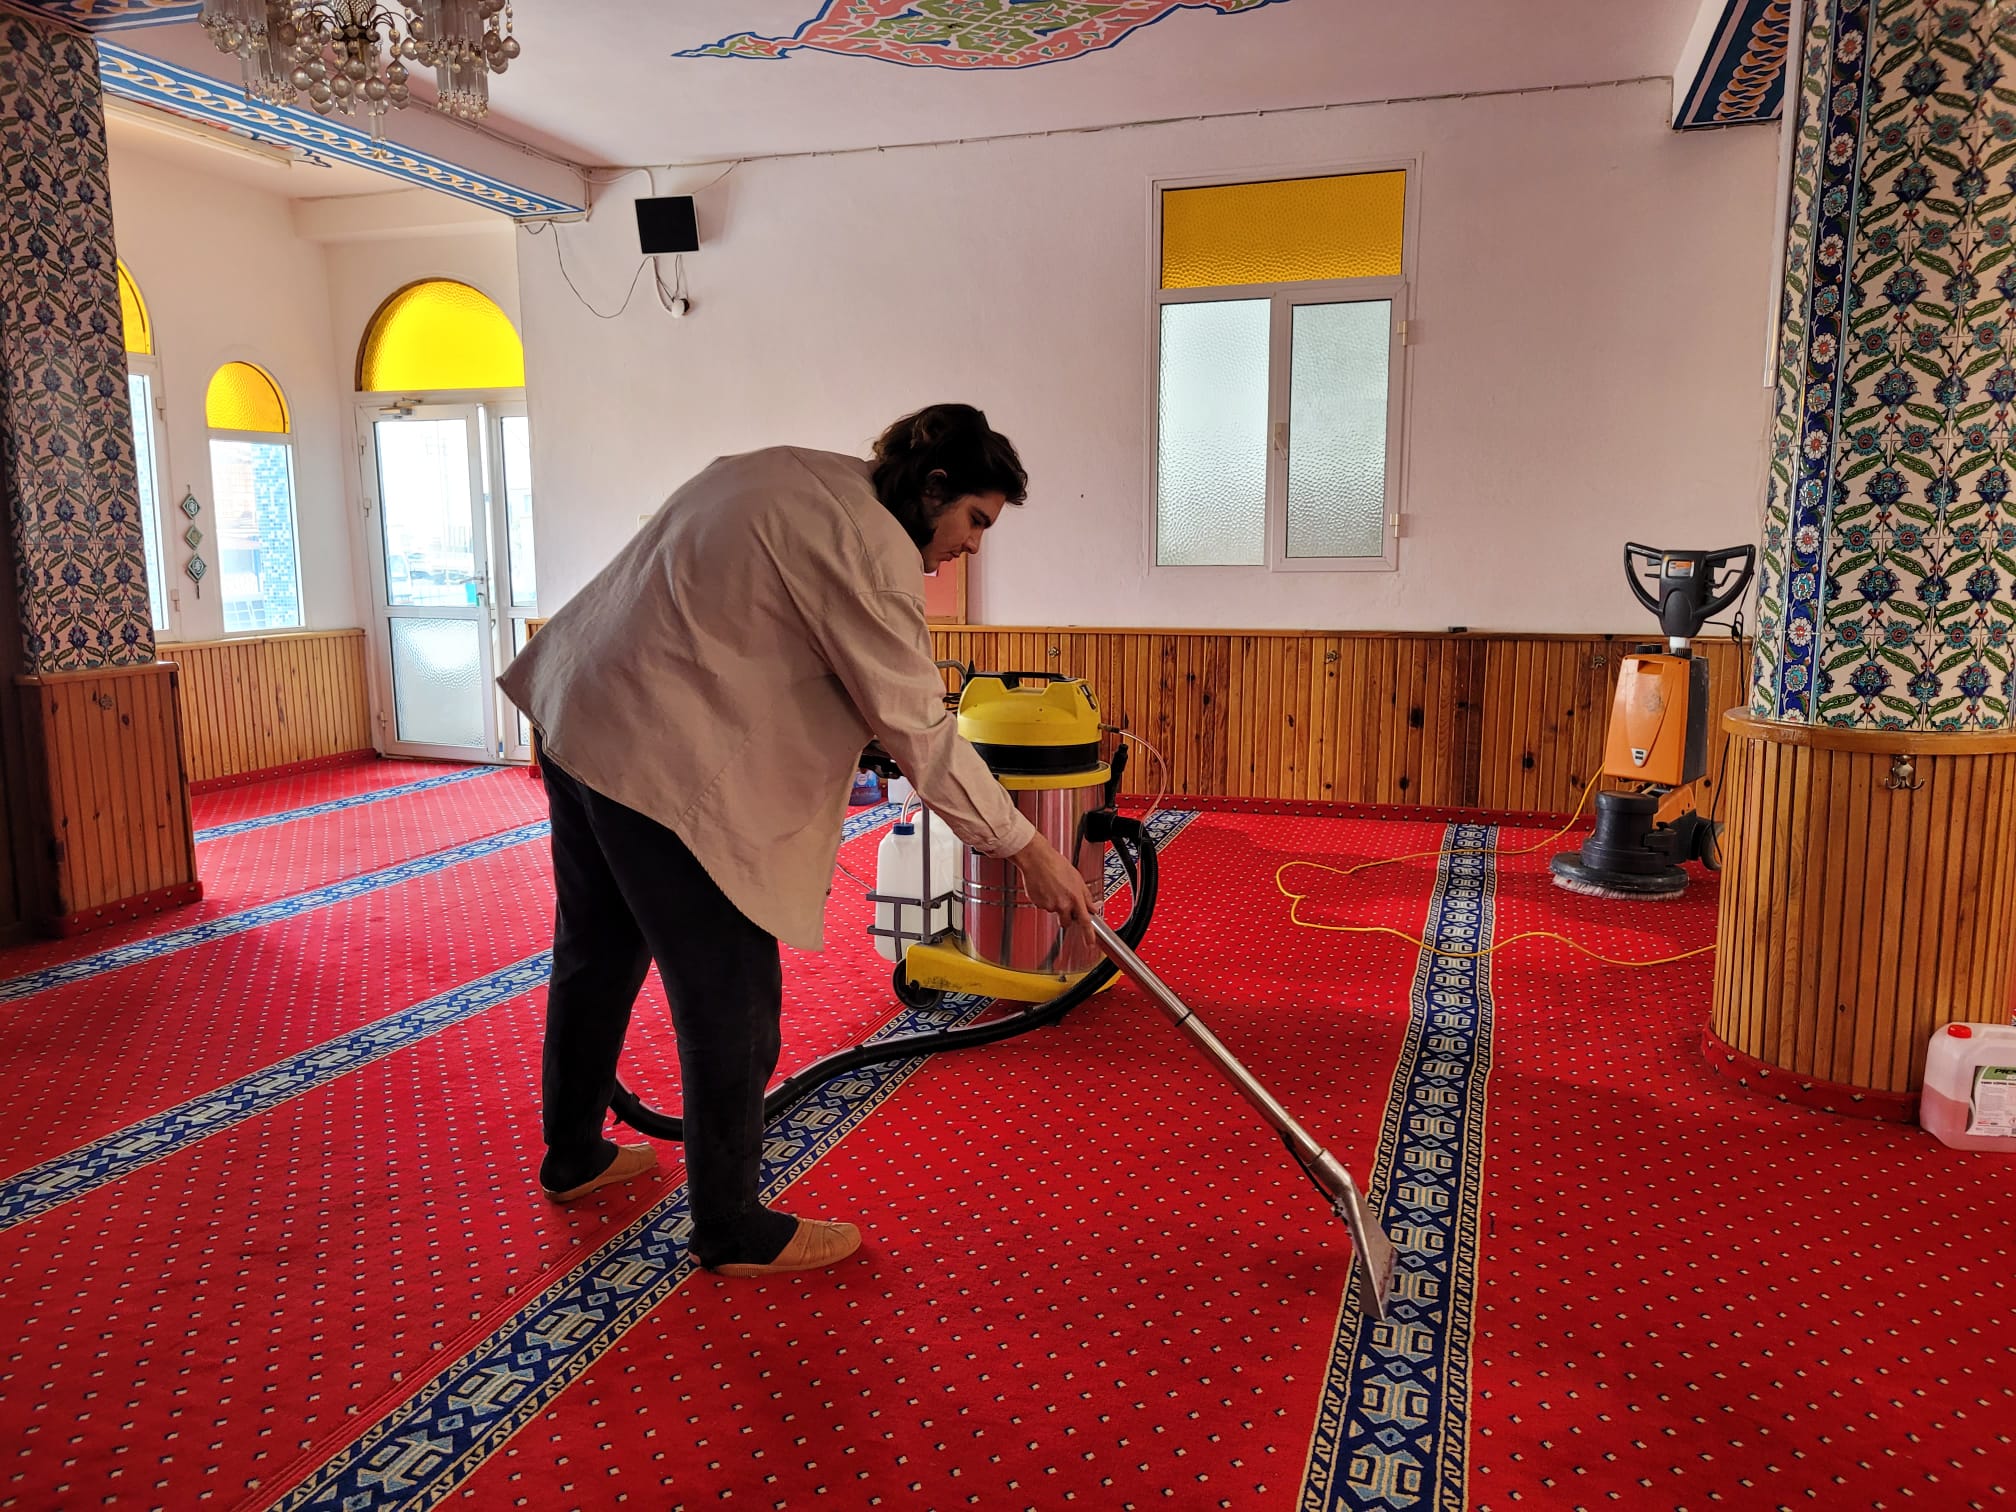 Cami Ramazan ayında cami ve ibadethanelerin daha yoğun olacağını göz önünde bulunduran Narlıdere Belediyesi, camilerde temizlik çalışması gerçekleştirdi.